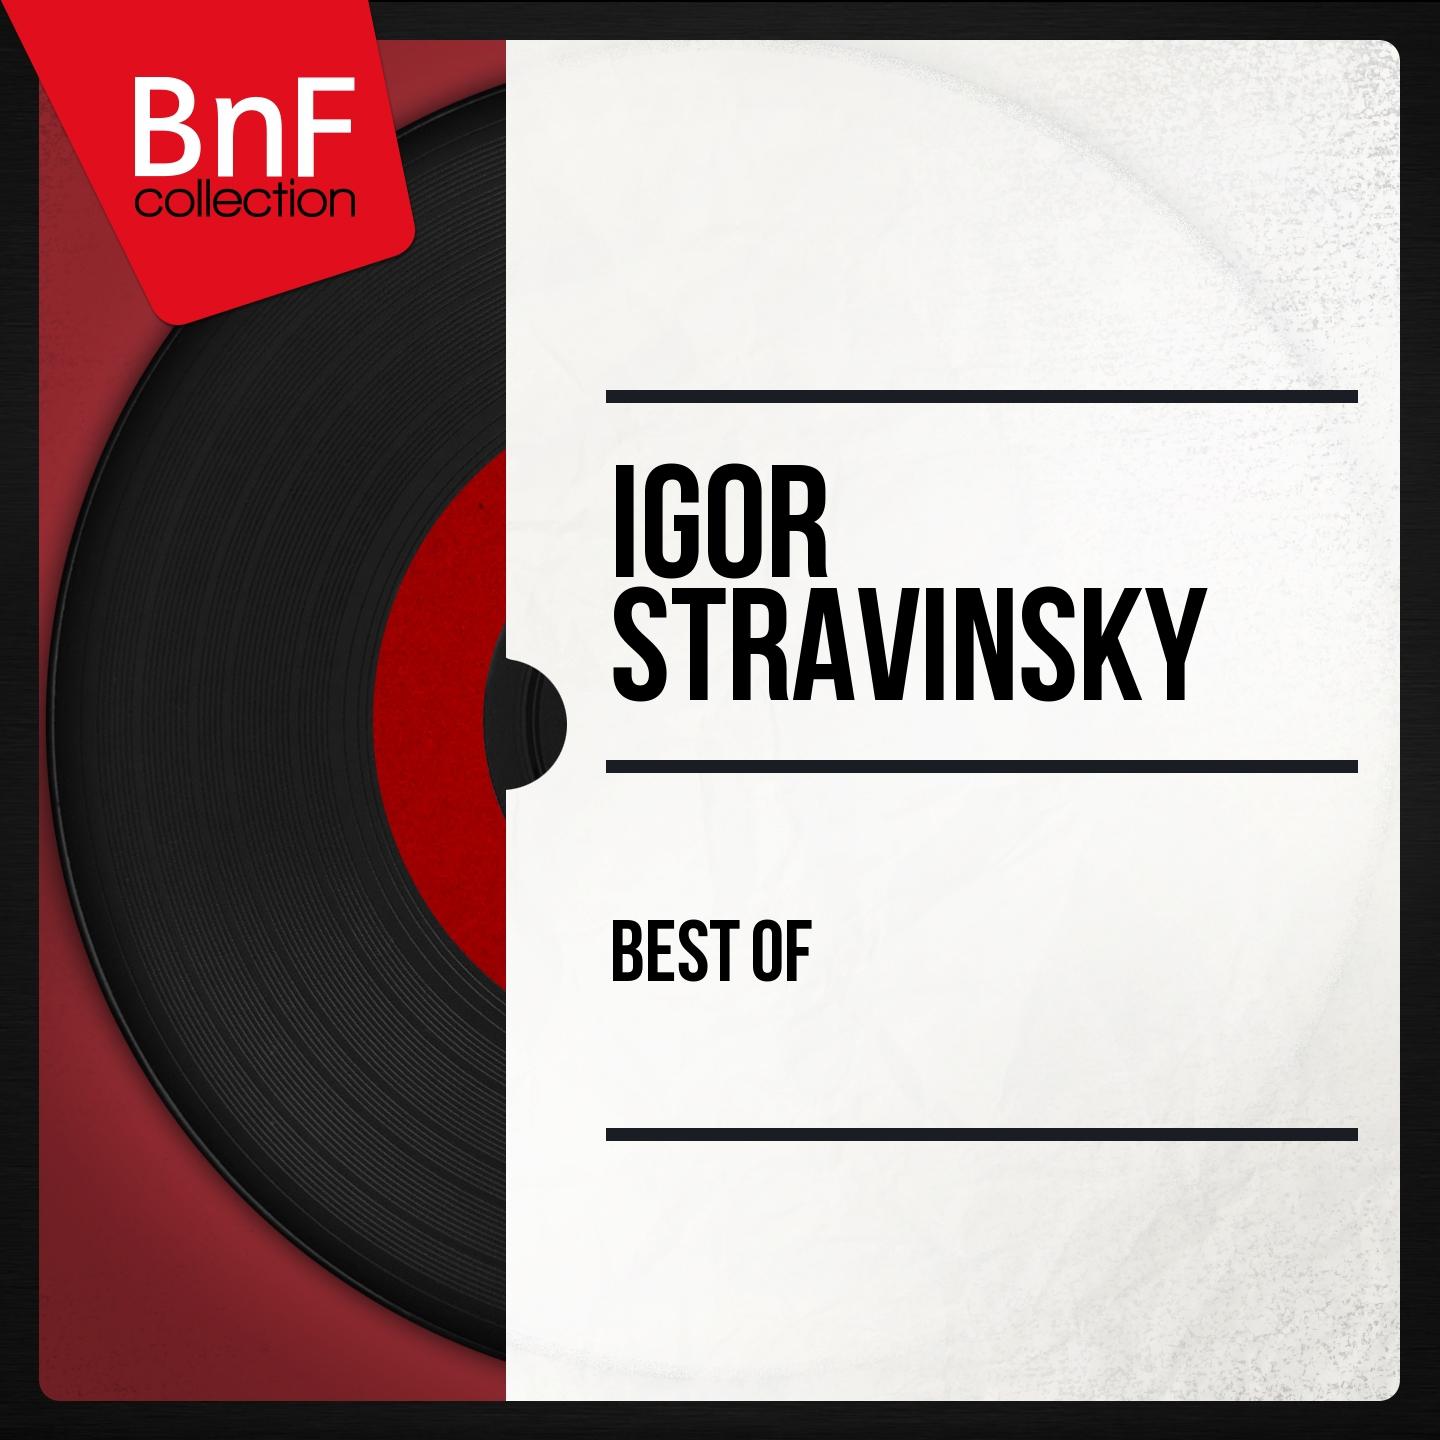 Постер альбома Best of Stravinsky